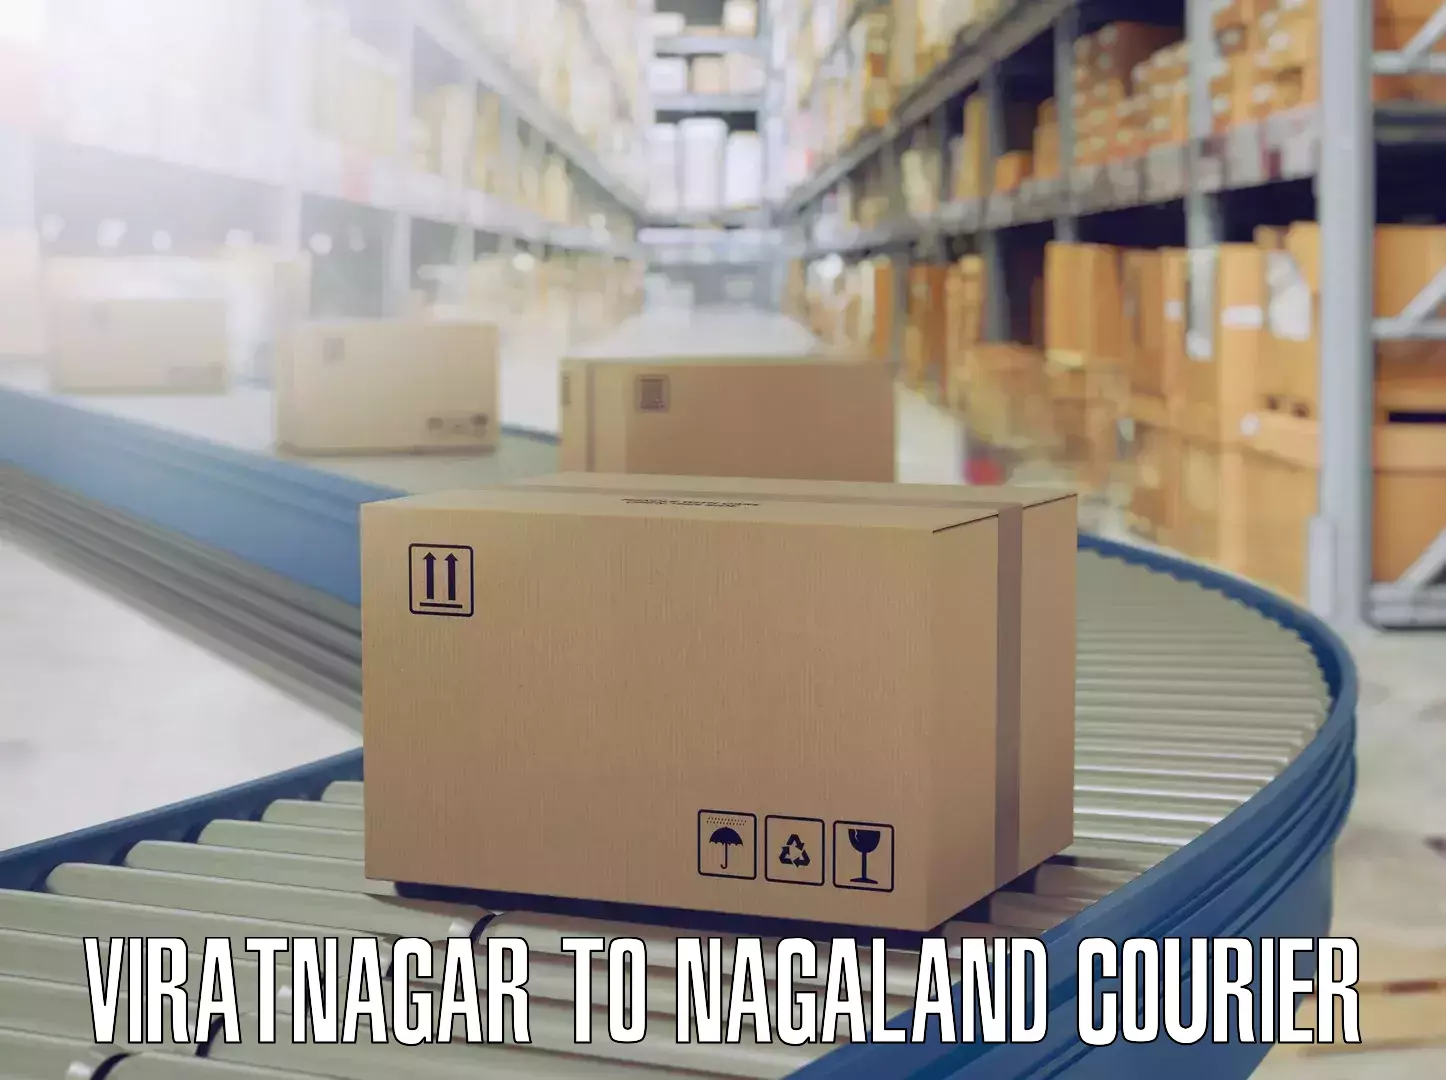 Professional packing services Viratnagar to Nagaland